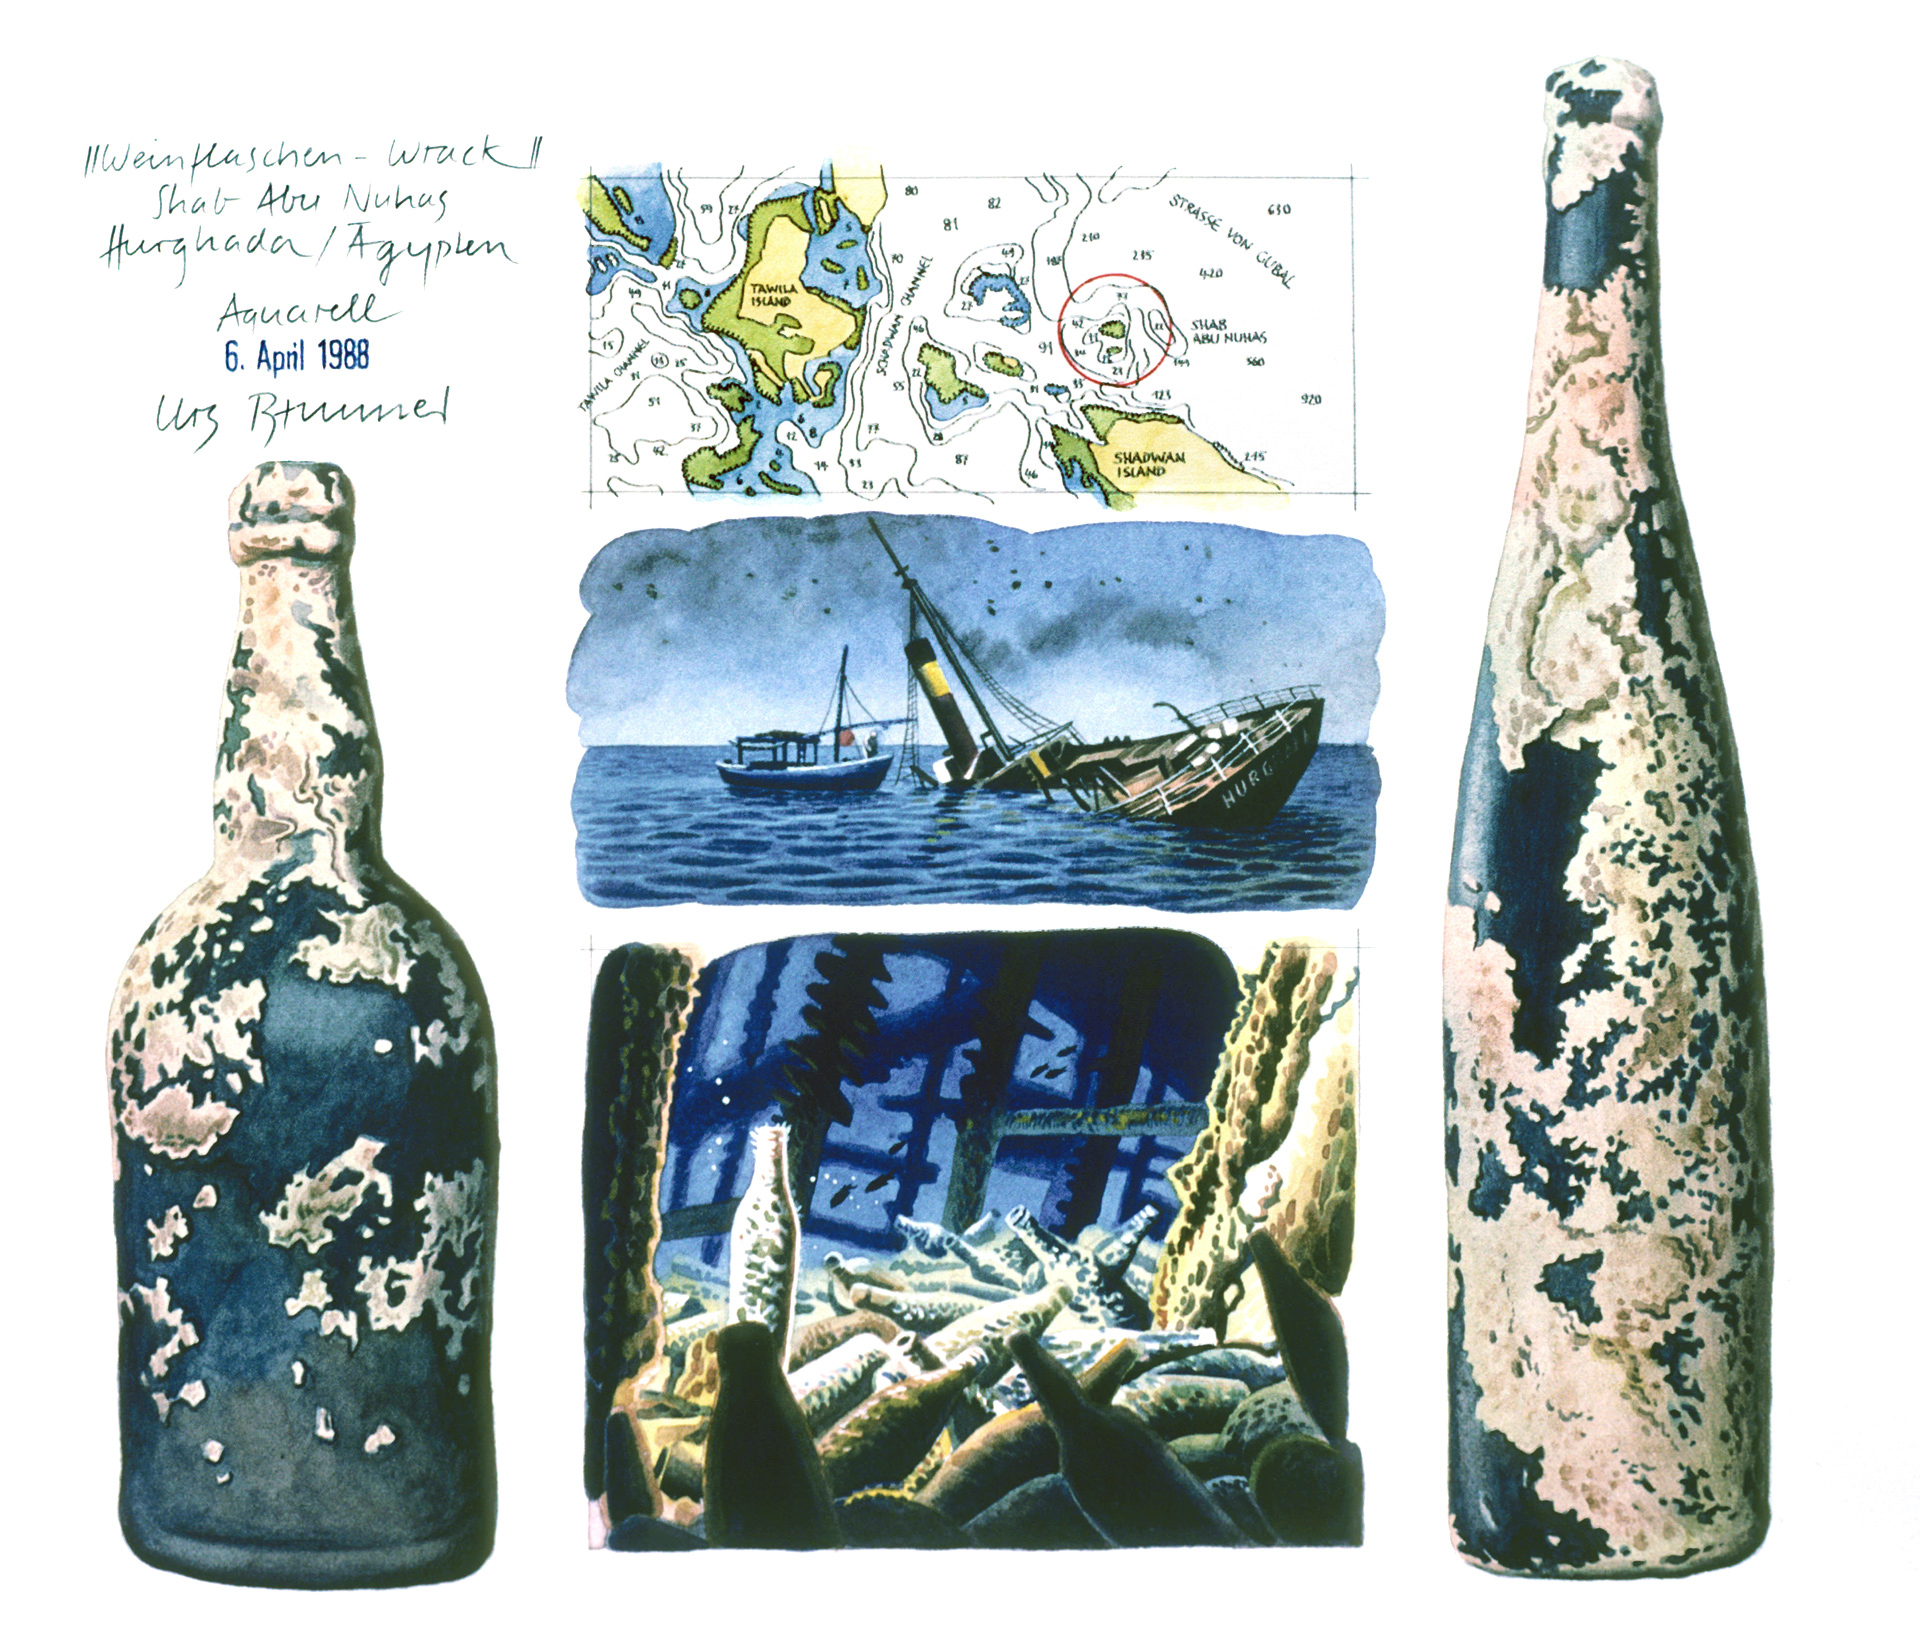 Carnatic / Weinflaschen-Wrack / Fundstücke, 1988, Aquarell und Filzstift auf Papier, 25 x 27 cm